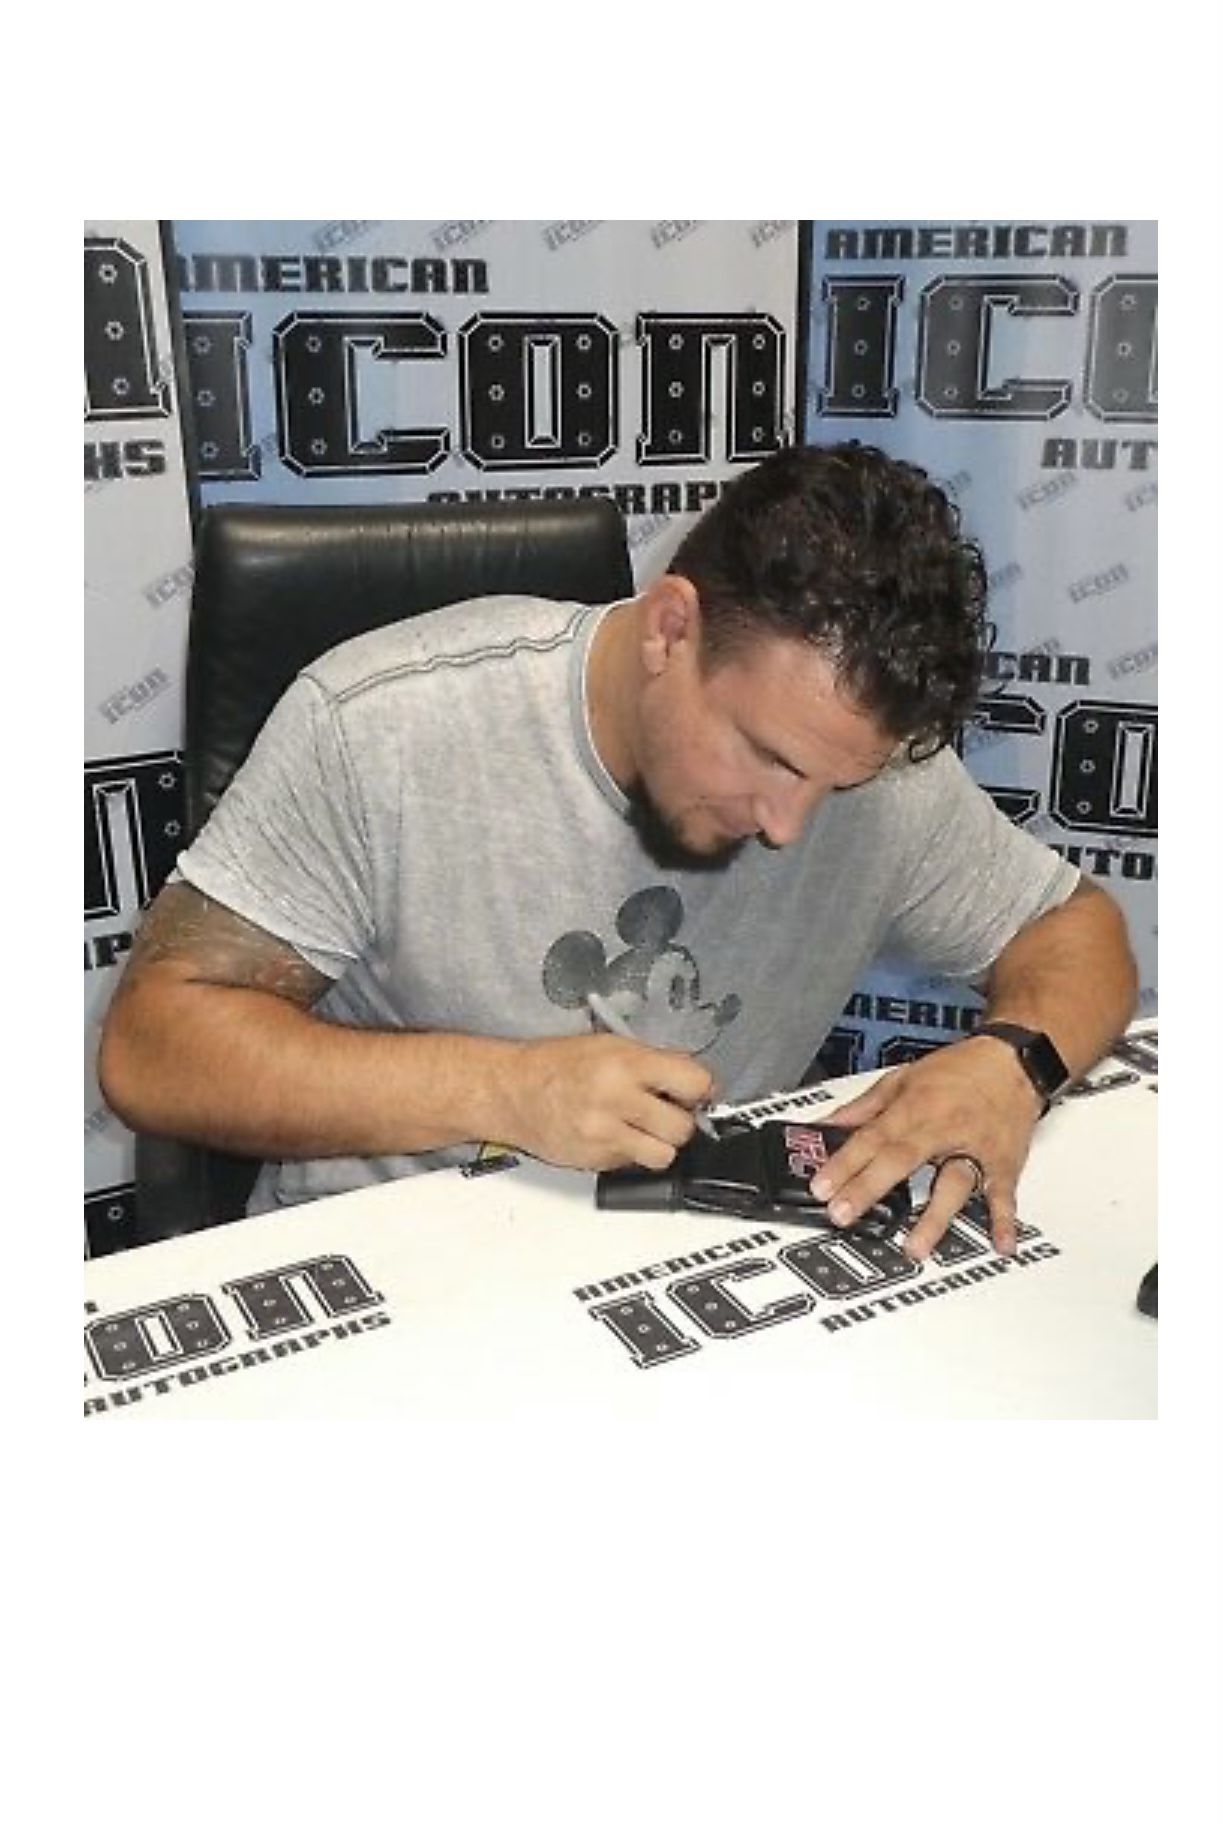 UFC Autograph Glove Lot